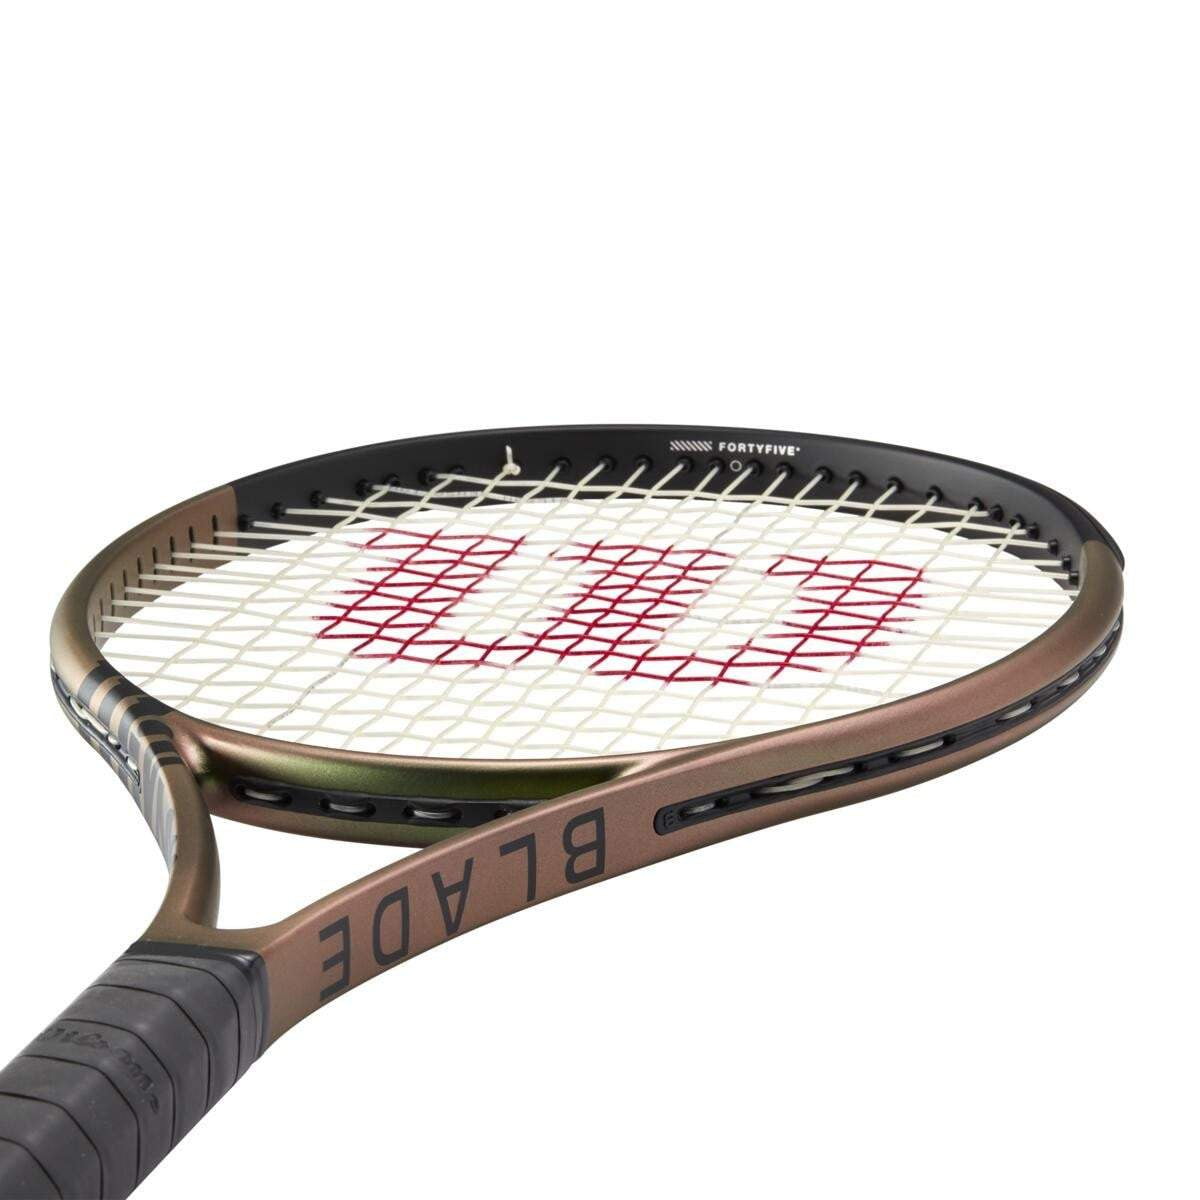 Wilson Blade 104 V8 Tennis Racquet 2021 - Tennis Racquet - Wilson - ATR Sports